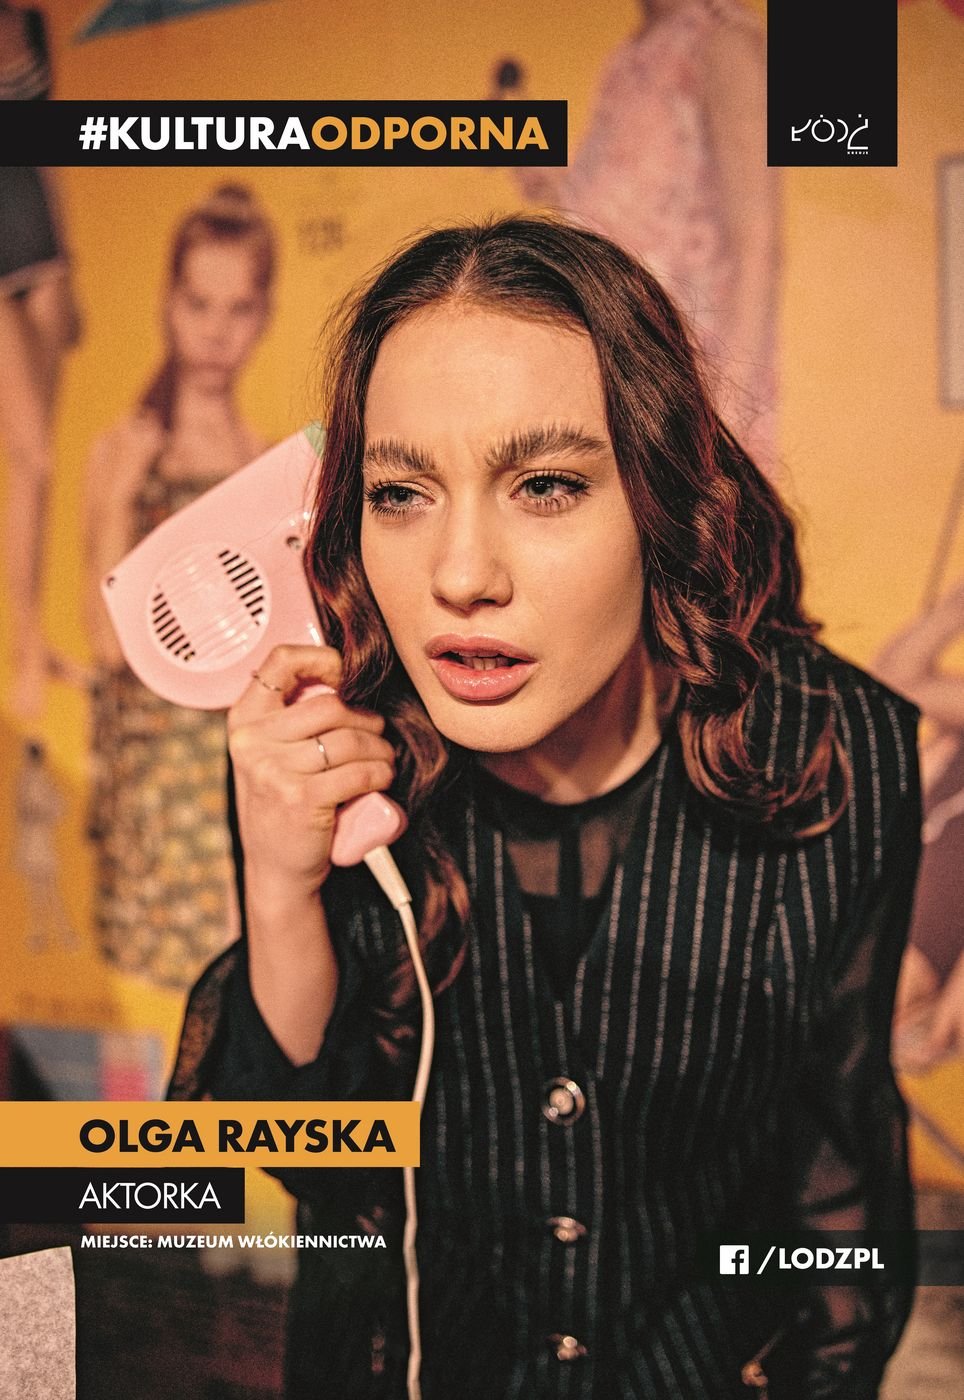 Olga Rayska